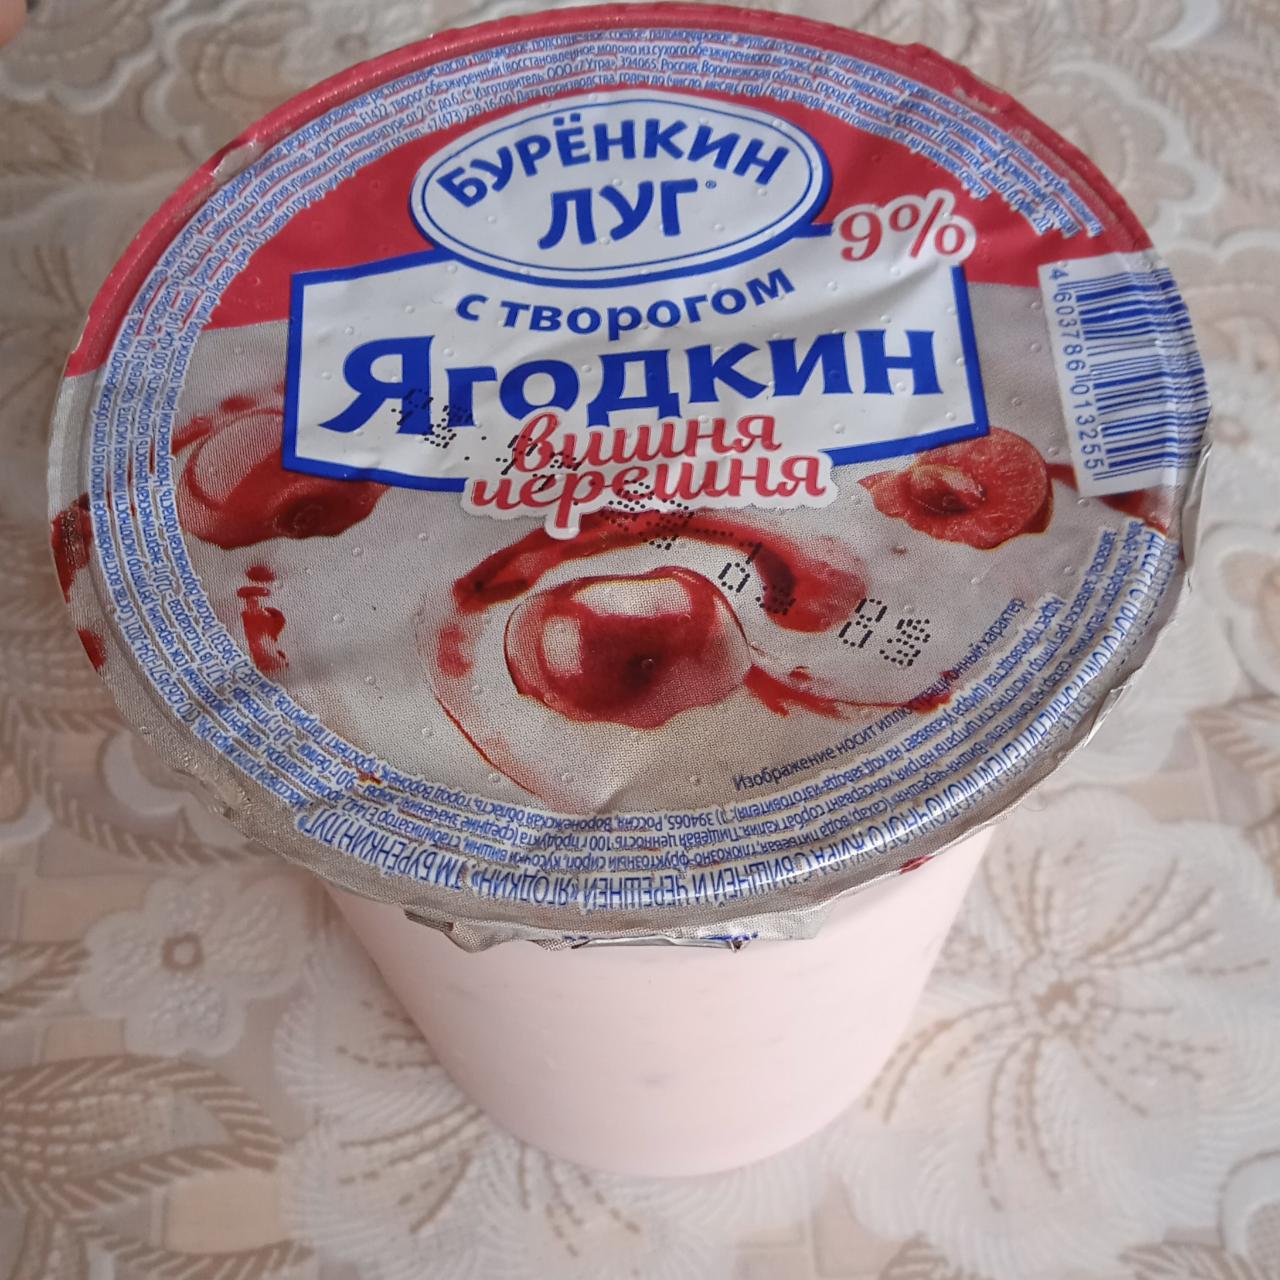 Фото - йогурт с творогом вишня-черешня 9% Буренкин луг